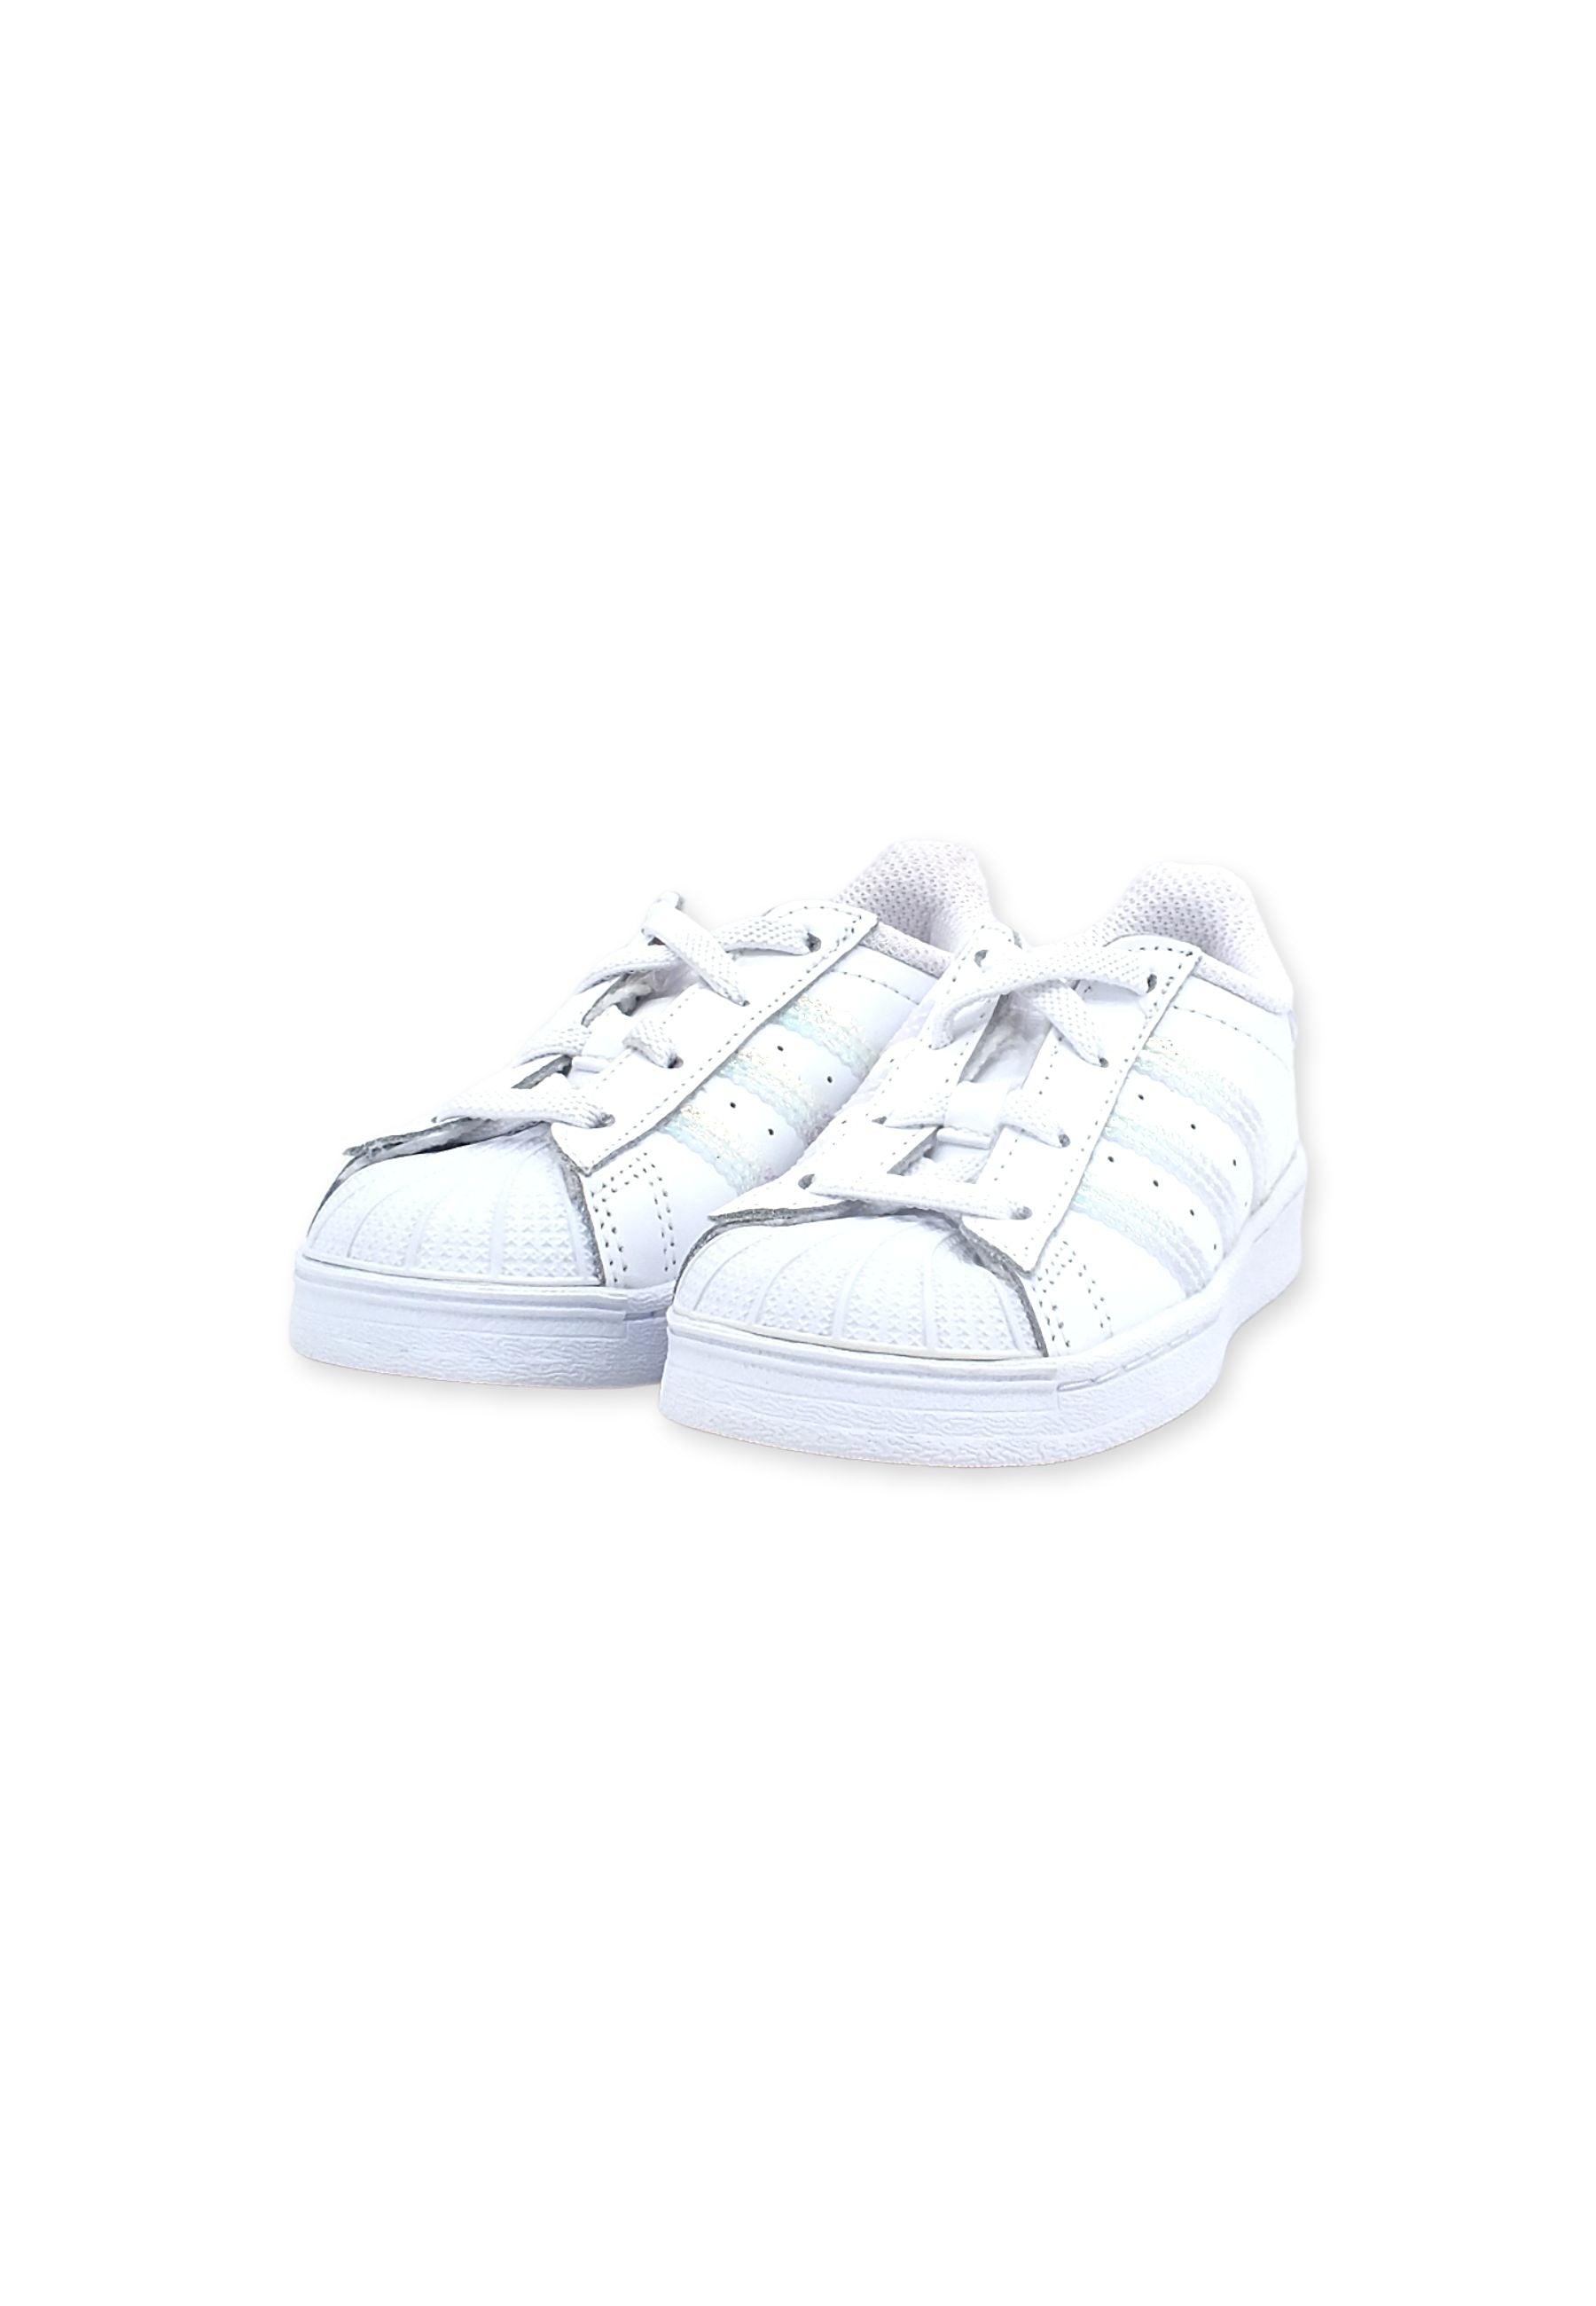 ADIDAS Superstar Sneaker Bimbo White FV3143 - Sandrini Calzature e Abbigliamento